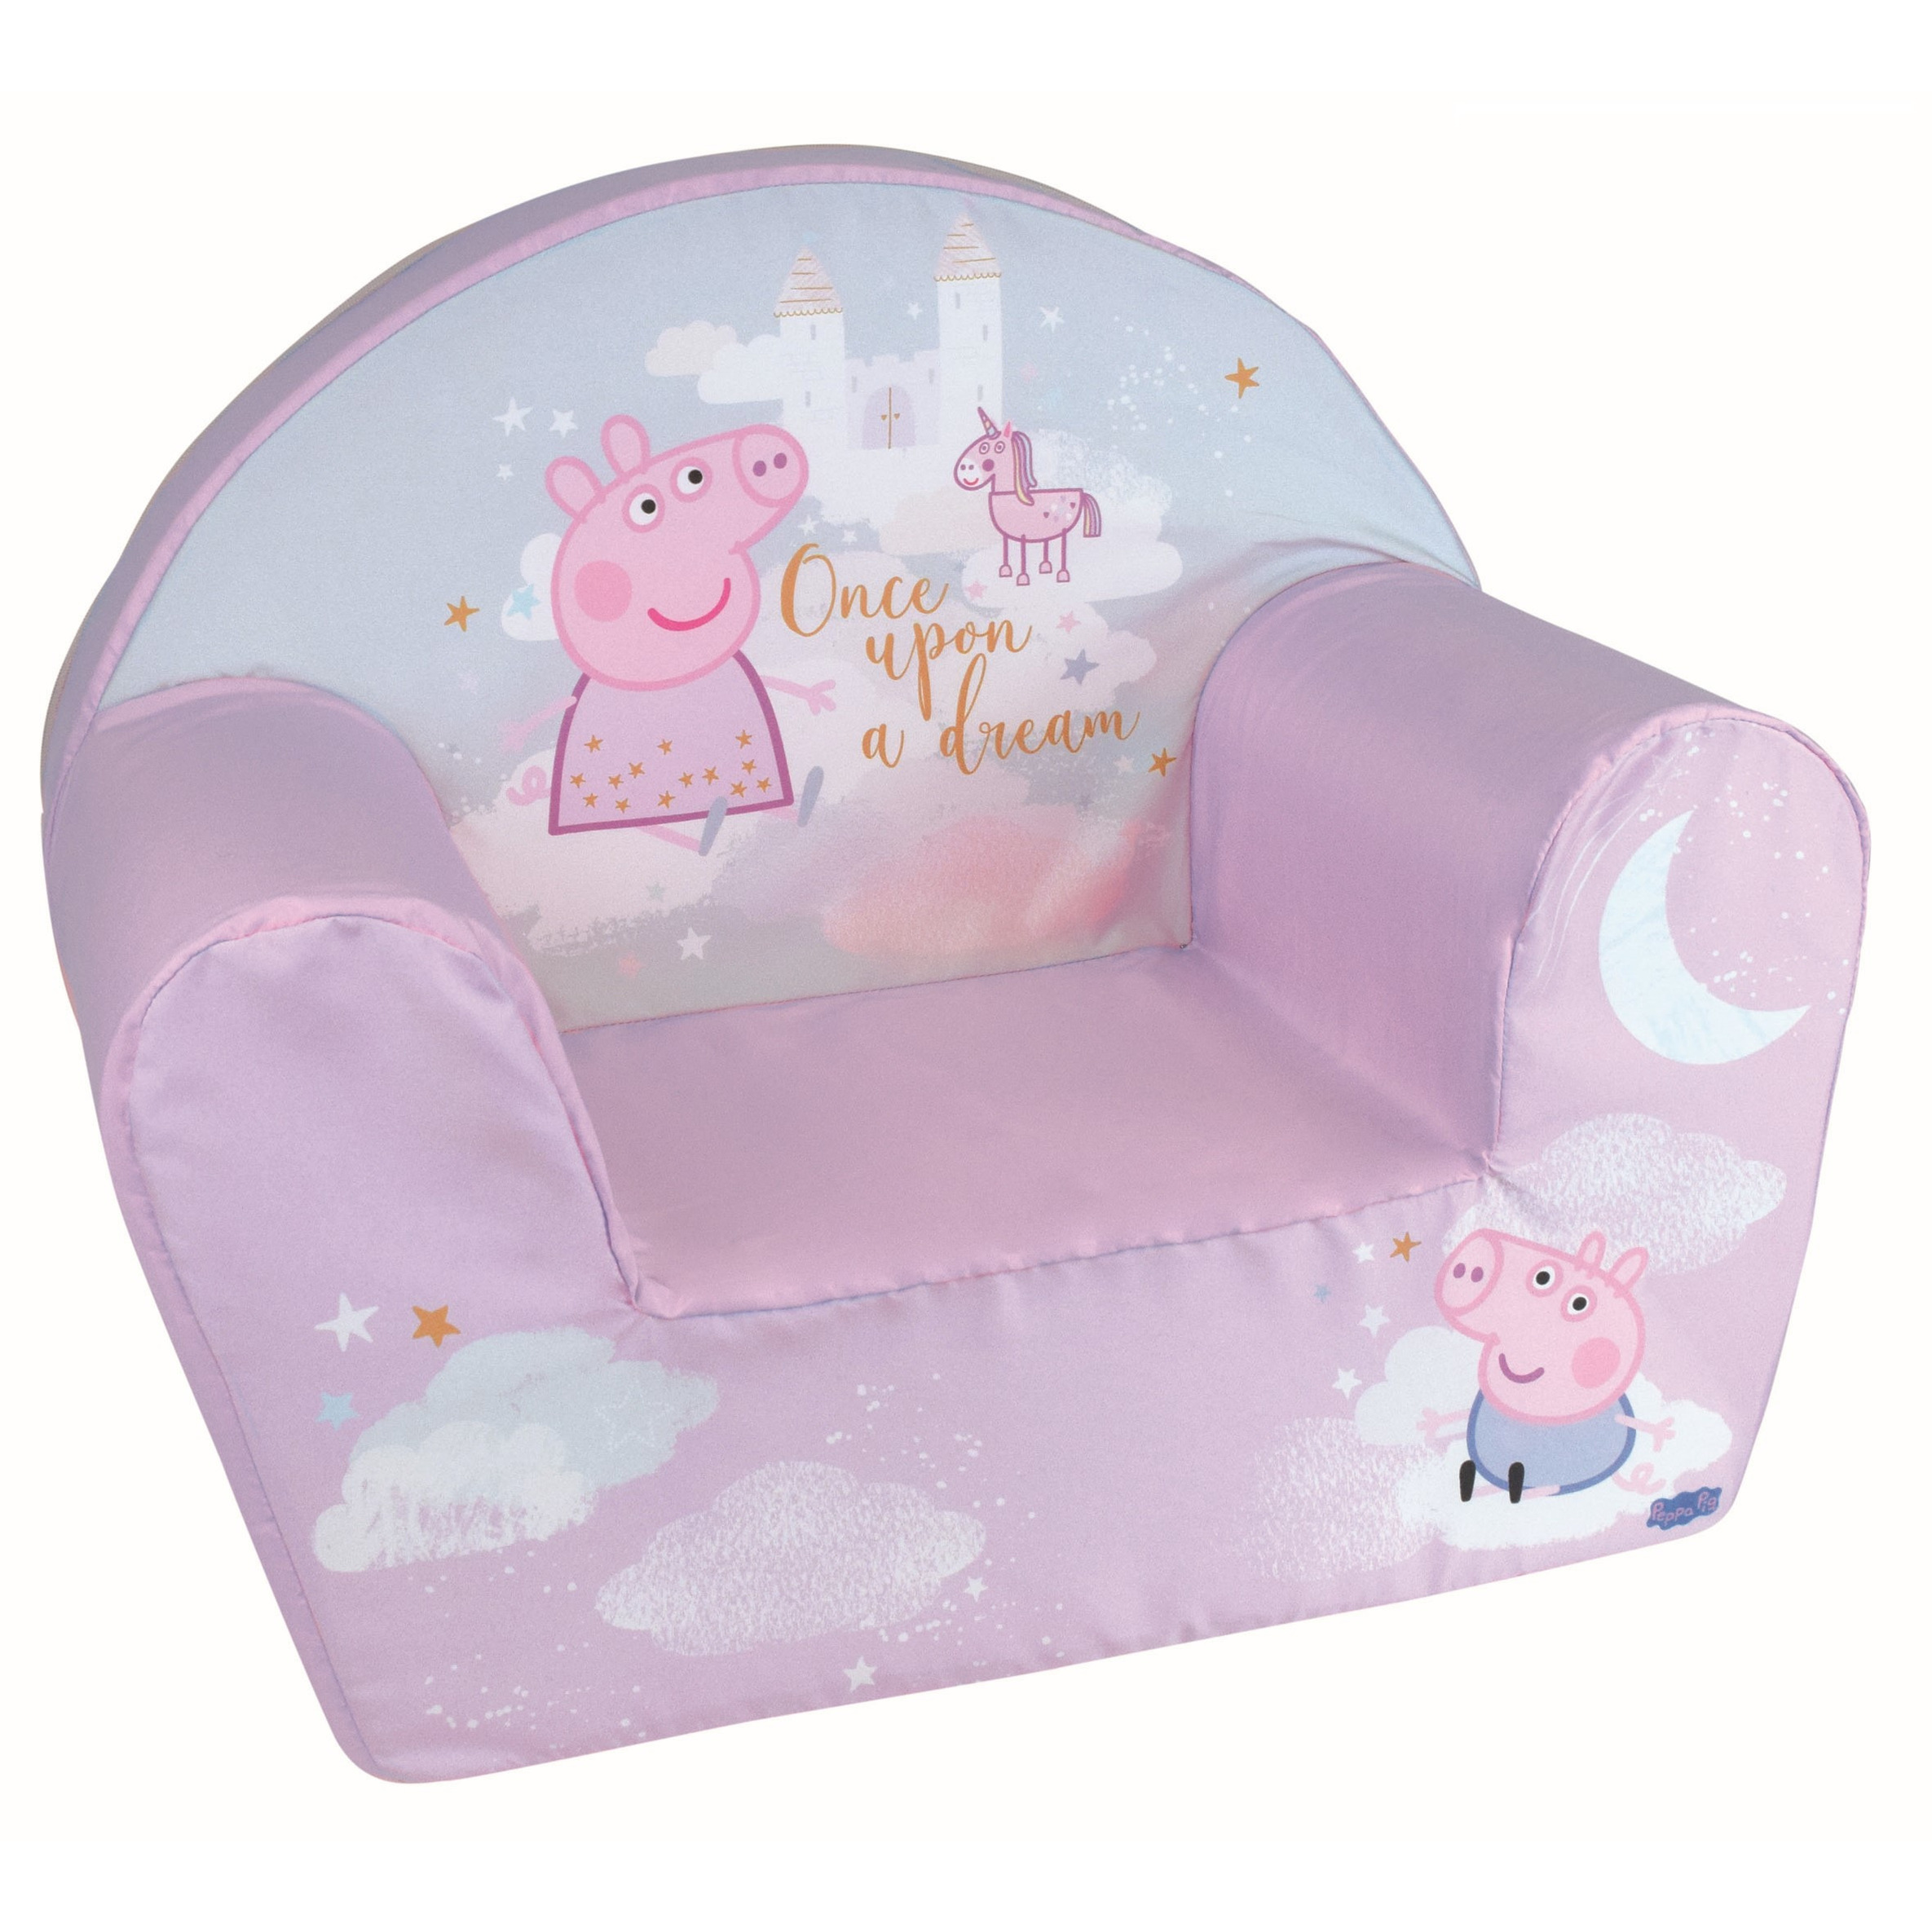 Peppa Pig kinderstoel/kinderfauteuil voor peuters 33 x 52 x 42 cm